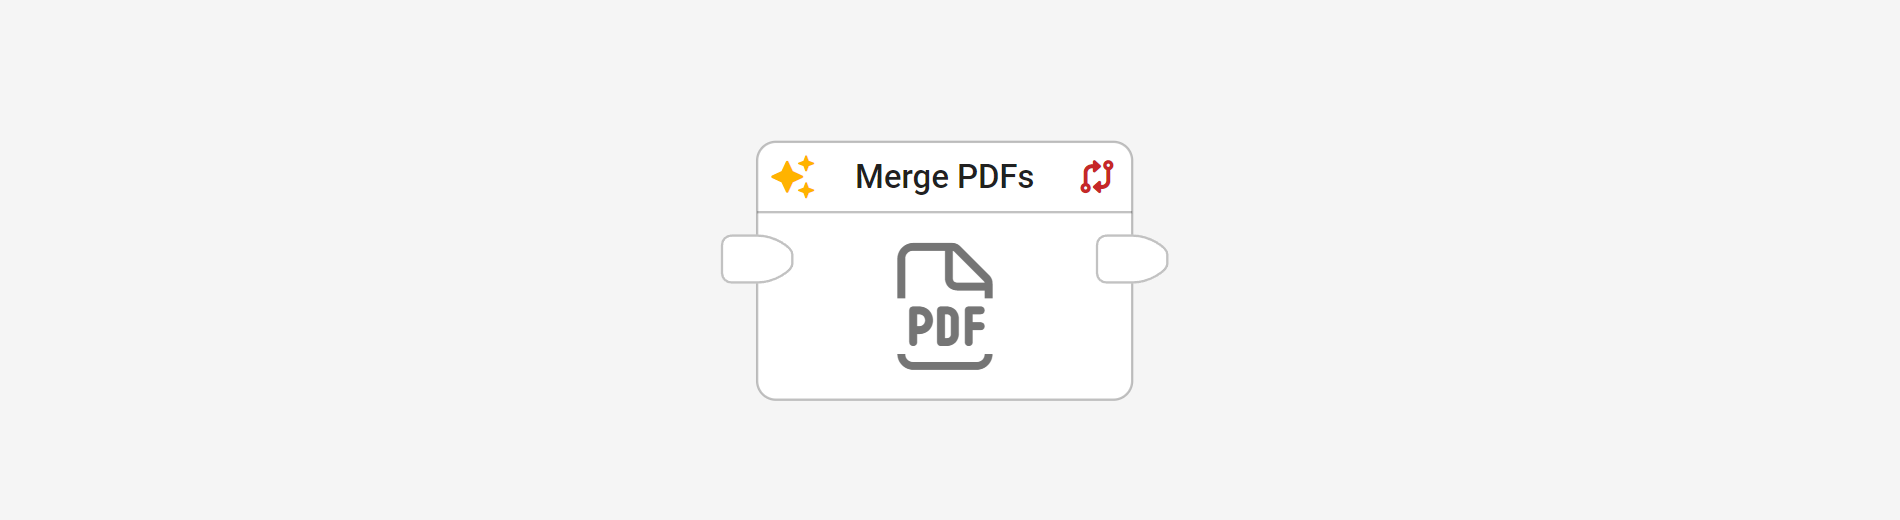 Merge PDF block in flow editor